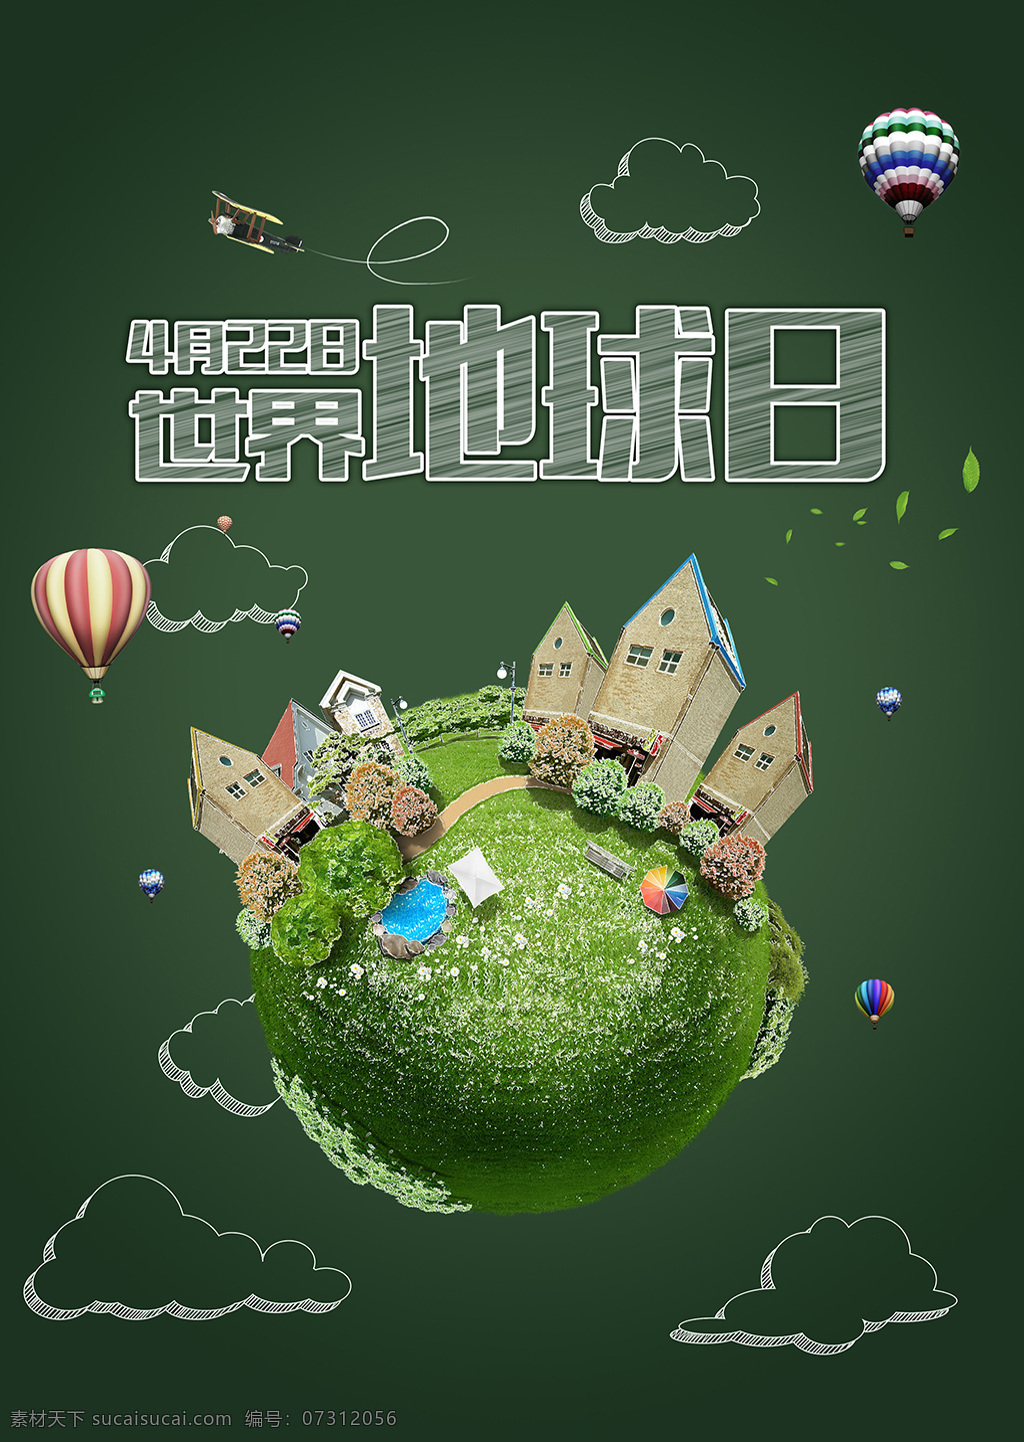 保护地球 保护环境 创意 地球 地球日 粉笔字 公益海报 家园 简约 绿色 世界地球日 气球 绿色展板 爱环境 爱地球 云朵